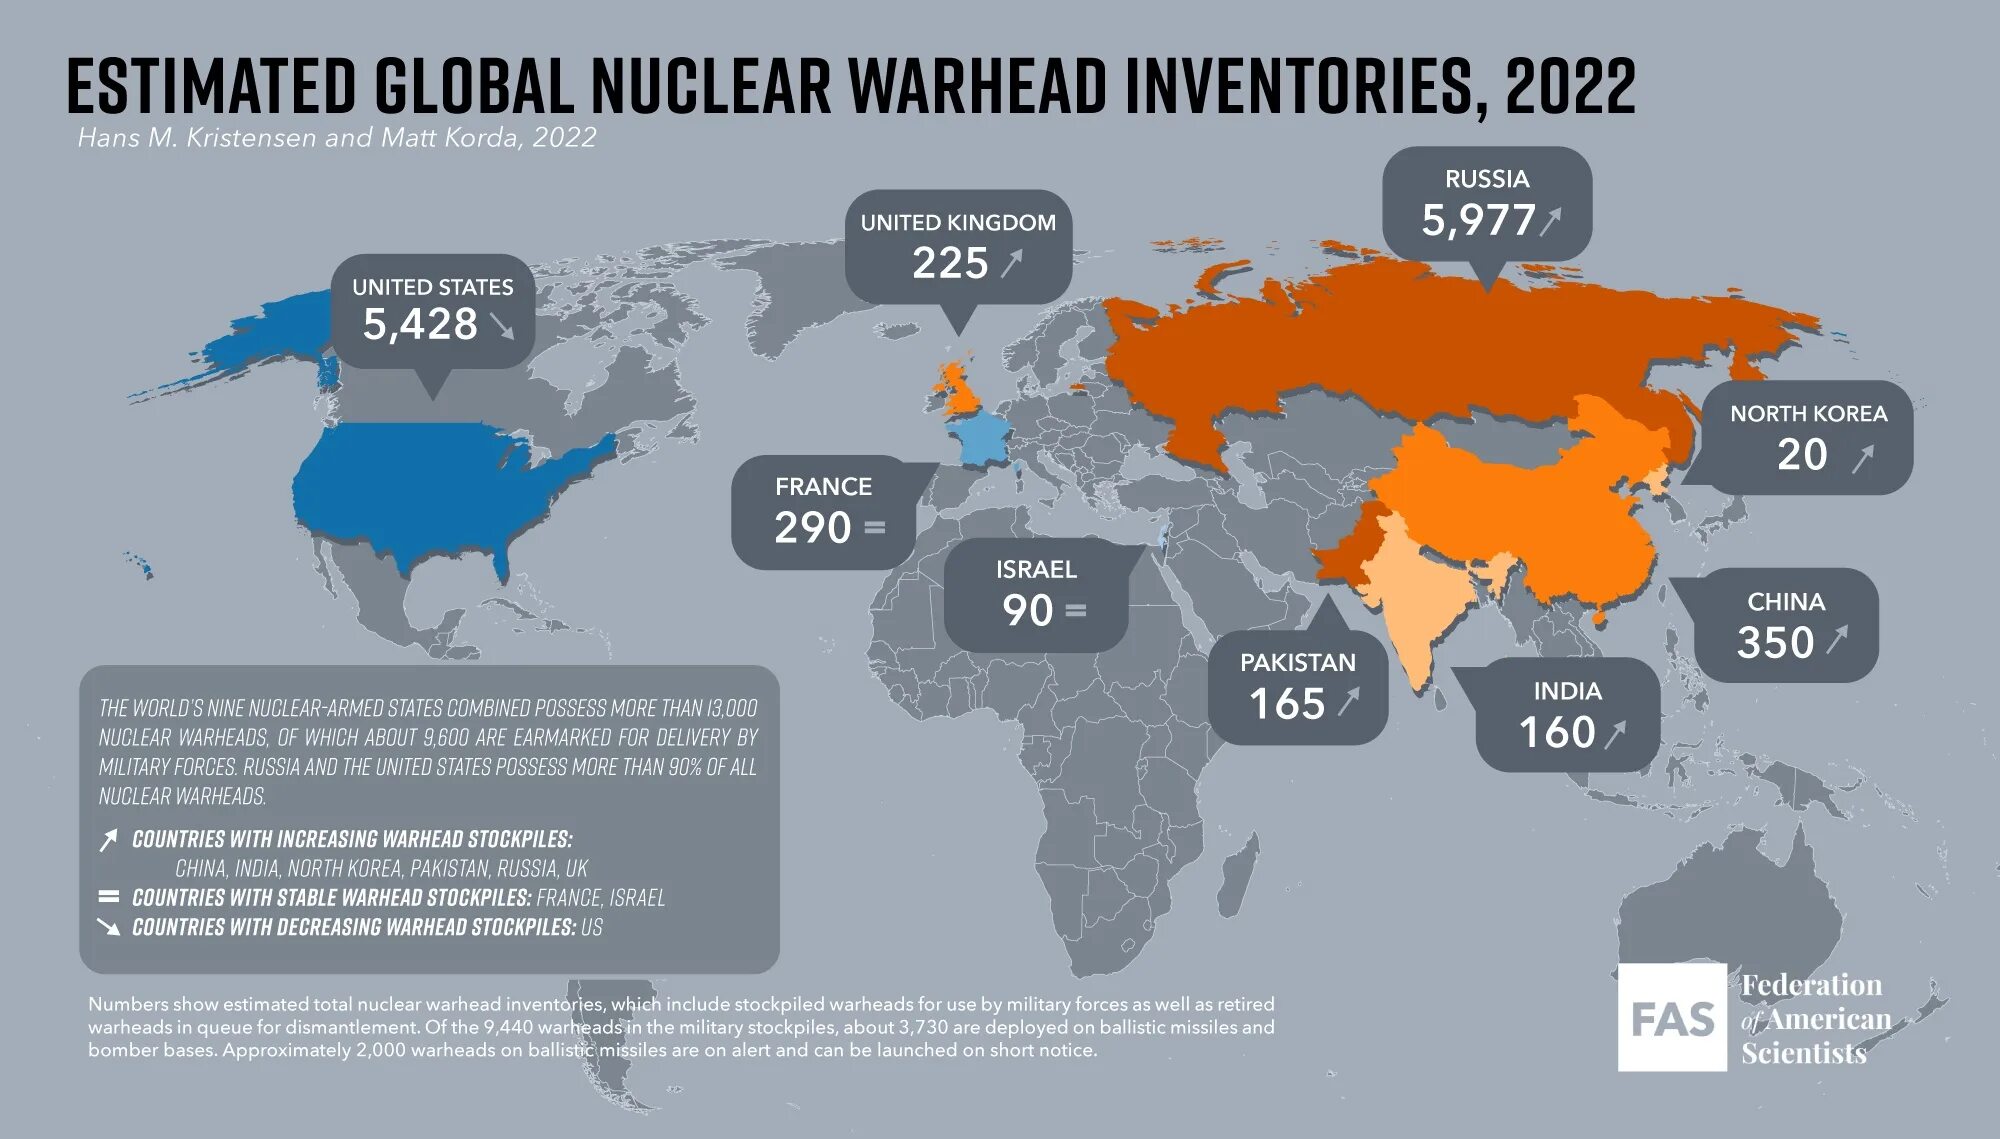 Атомные страны в мире. Страны с чдерным лоудием. Cnhfys c zlthysv JH. Количество ядерных боезарядов по странам. Страны обладающие ядерным оружием.